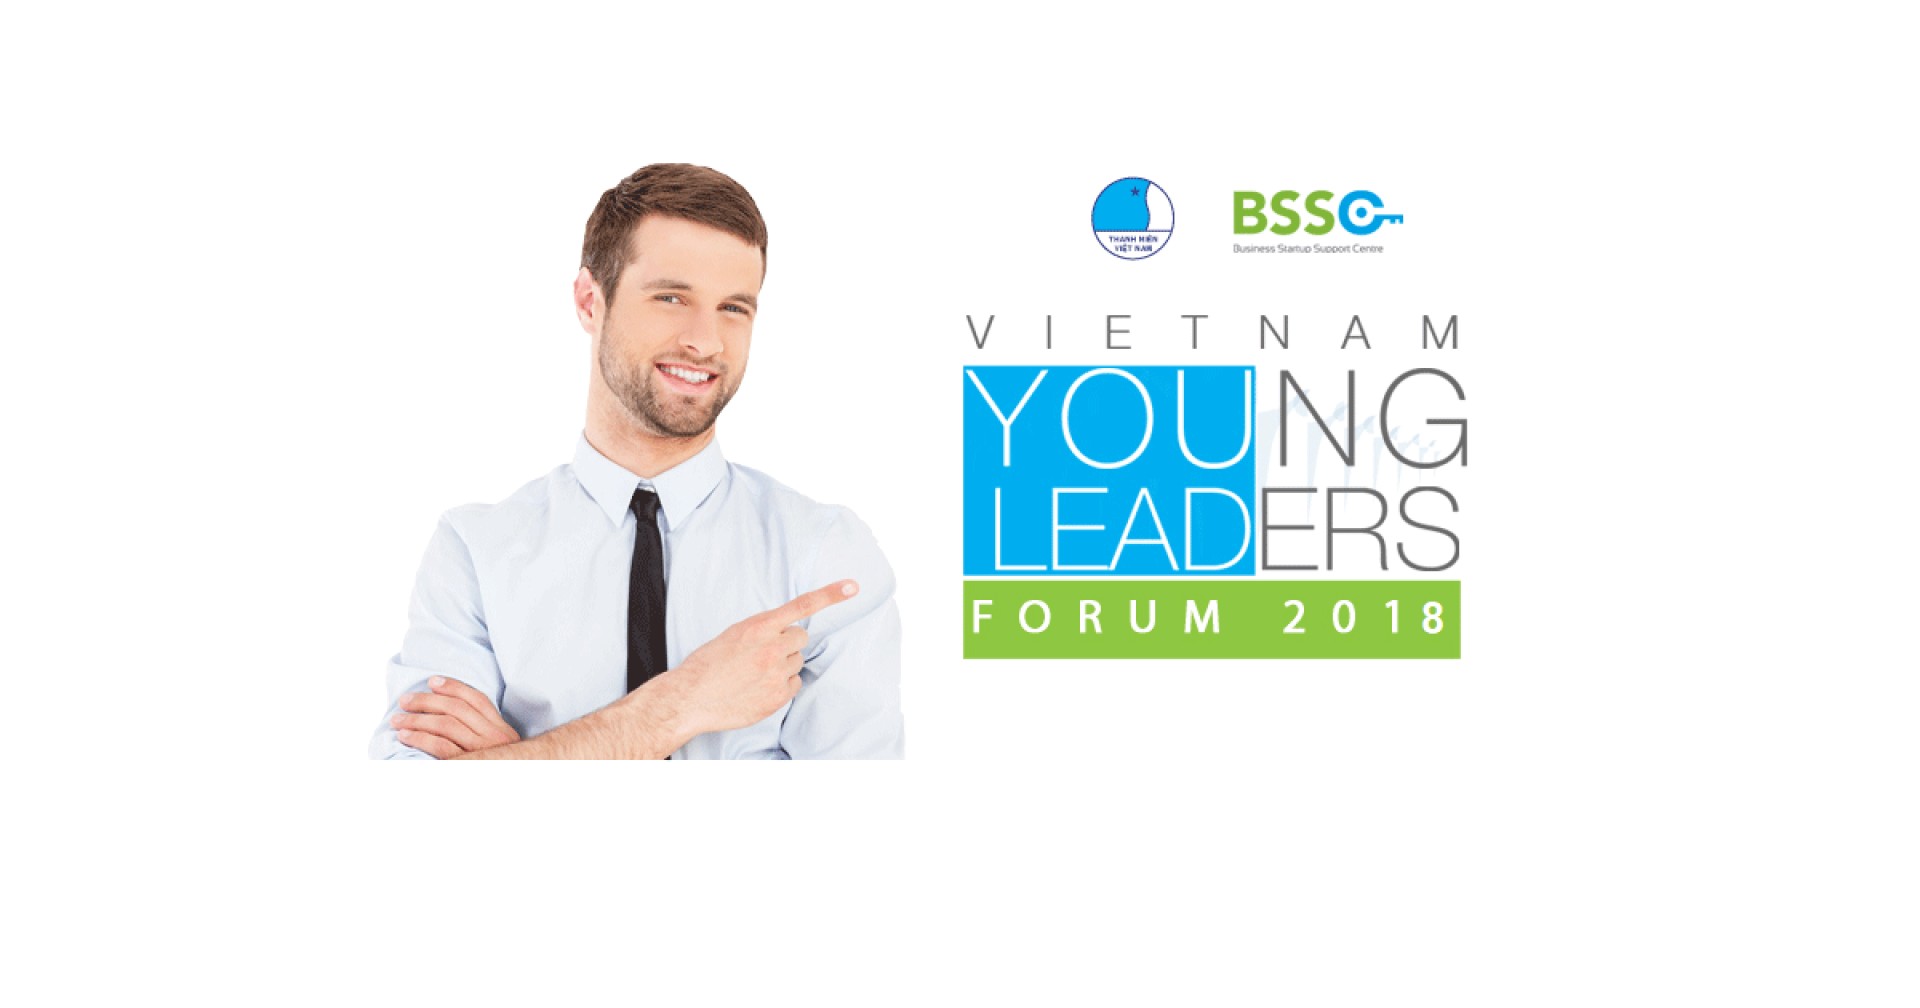 Diễn đàn Lãnh đạo Trẻ - Vietnam Young Leaders Forum 2018 